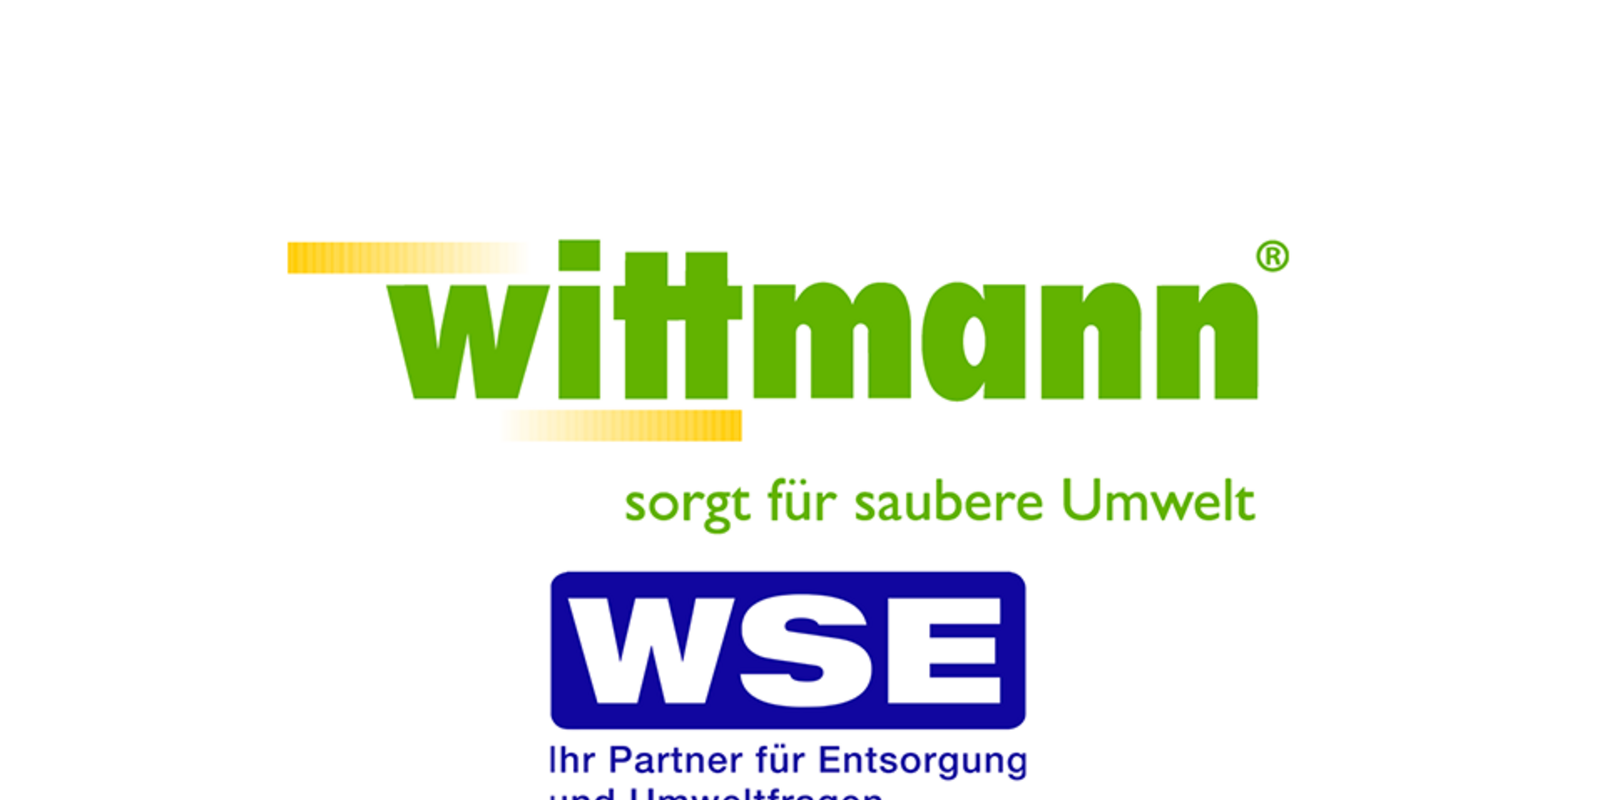 Logo Wittmann, WSE und Heid